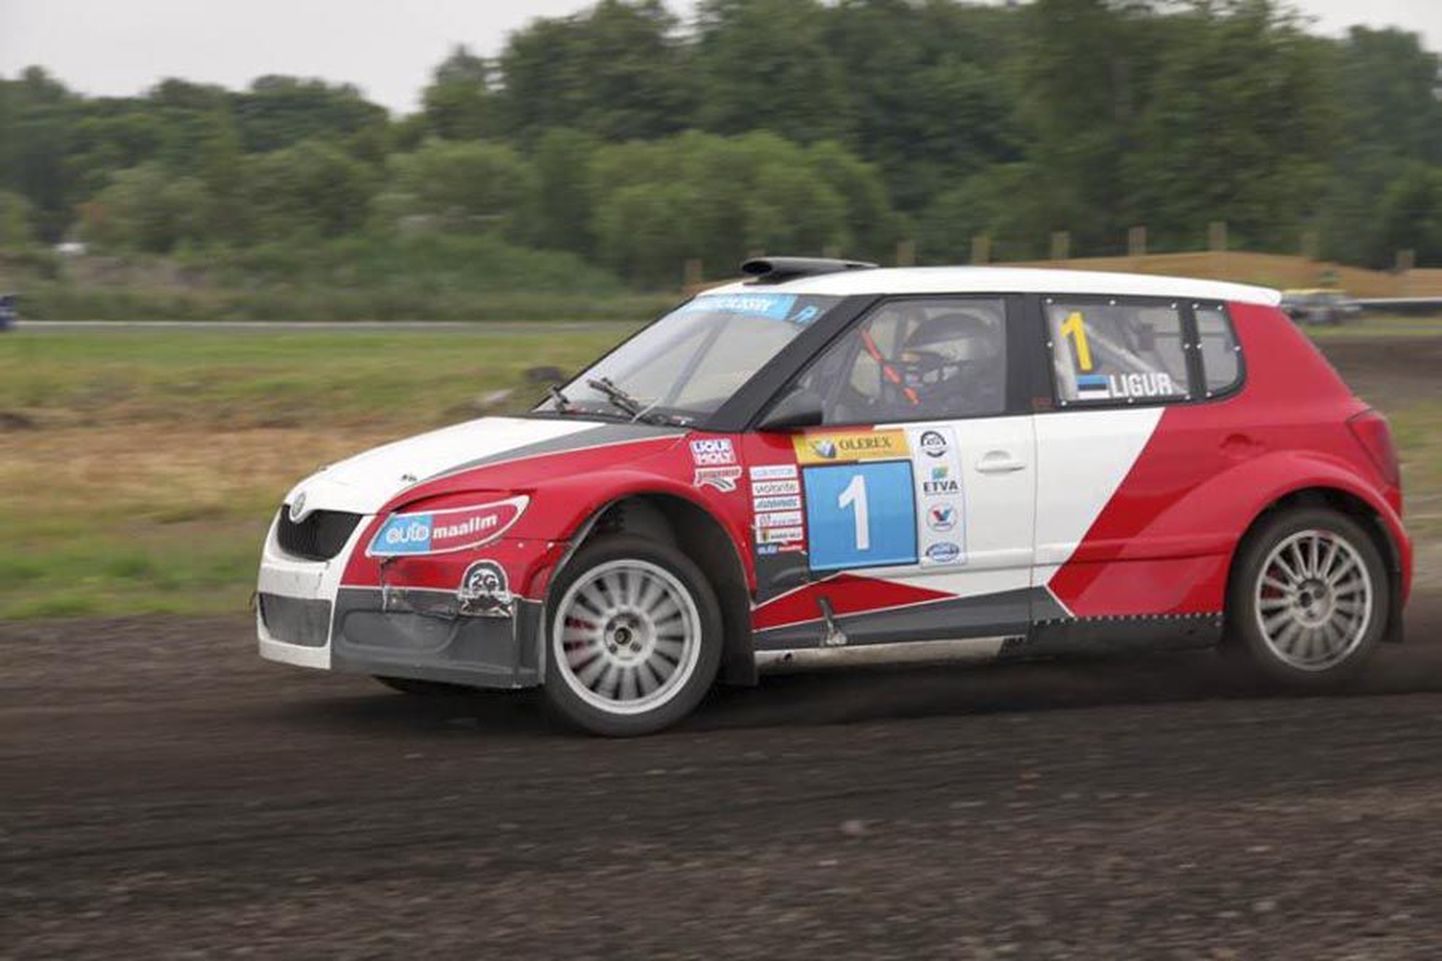 Tänavu pigem Euroopa rallikrossisarjale keskendunud Janno Ligur on kahel viimasel Eesti meistrivõistluste etapil näidanud oma klassis Super 1600 parimat minekut.